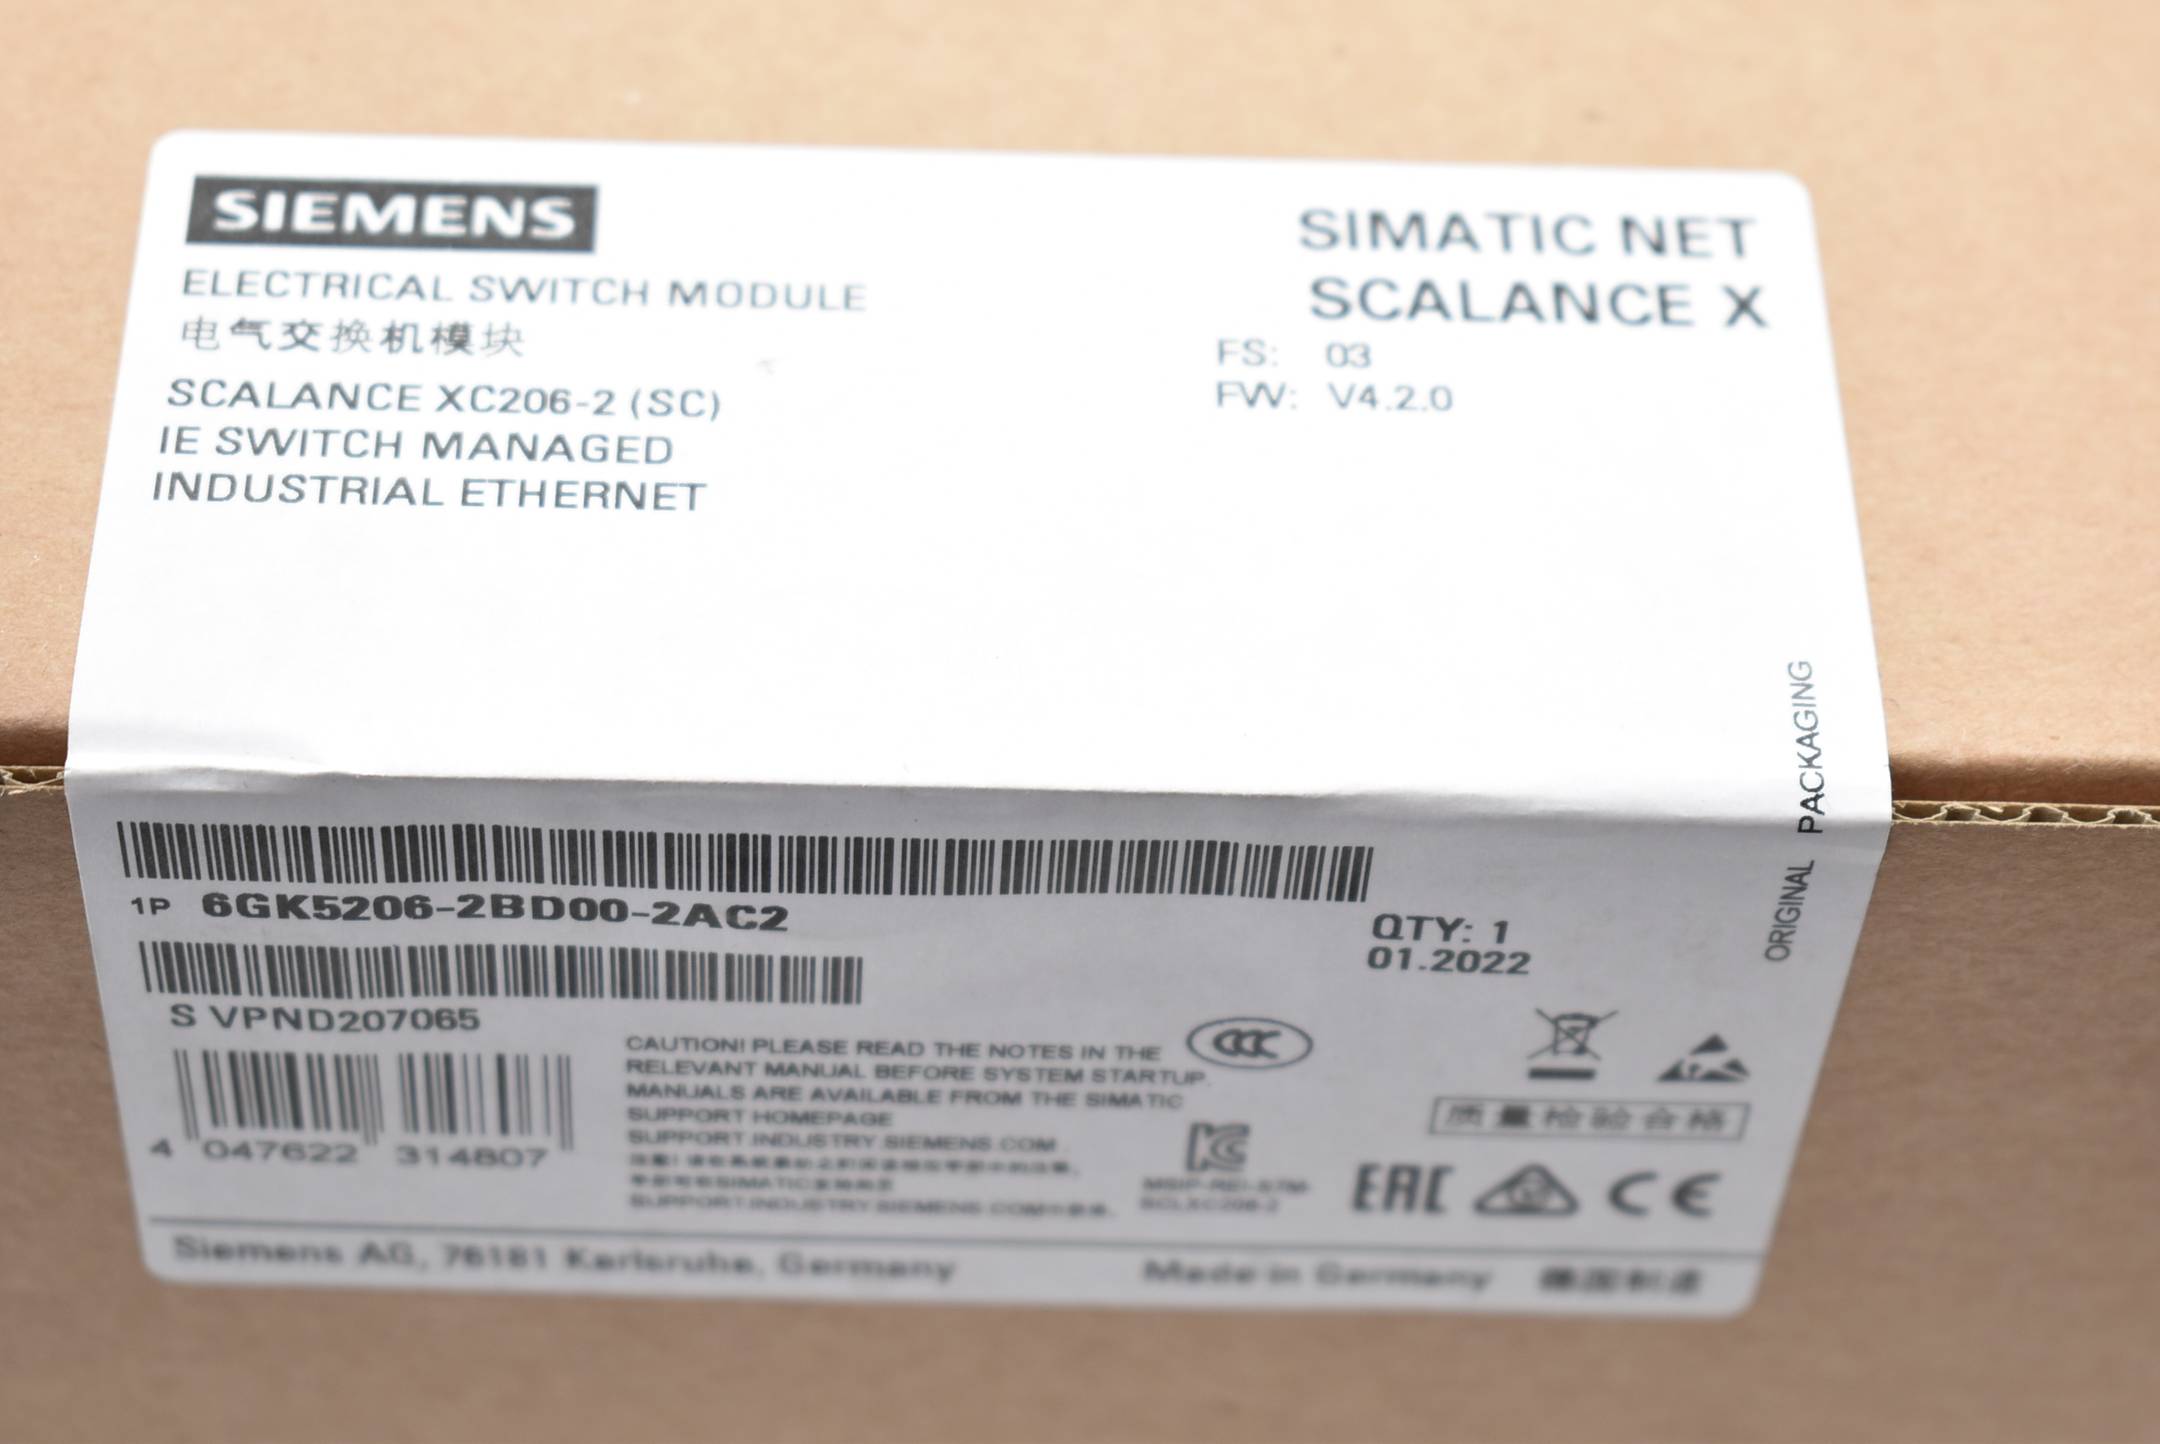 Siemens simatic NET SCALANCE X 6GK5206-2BD00-2AC2 ( 6GK5 206-2BD00-2AC2 ) FS3